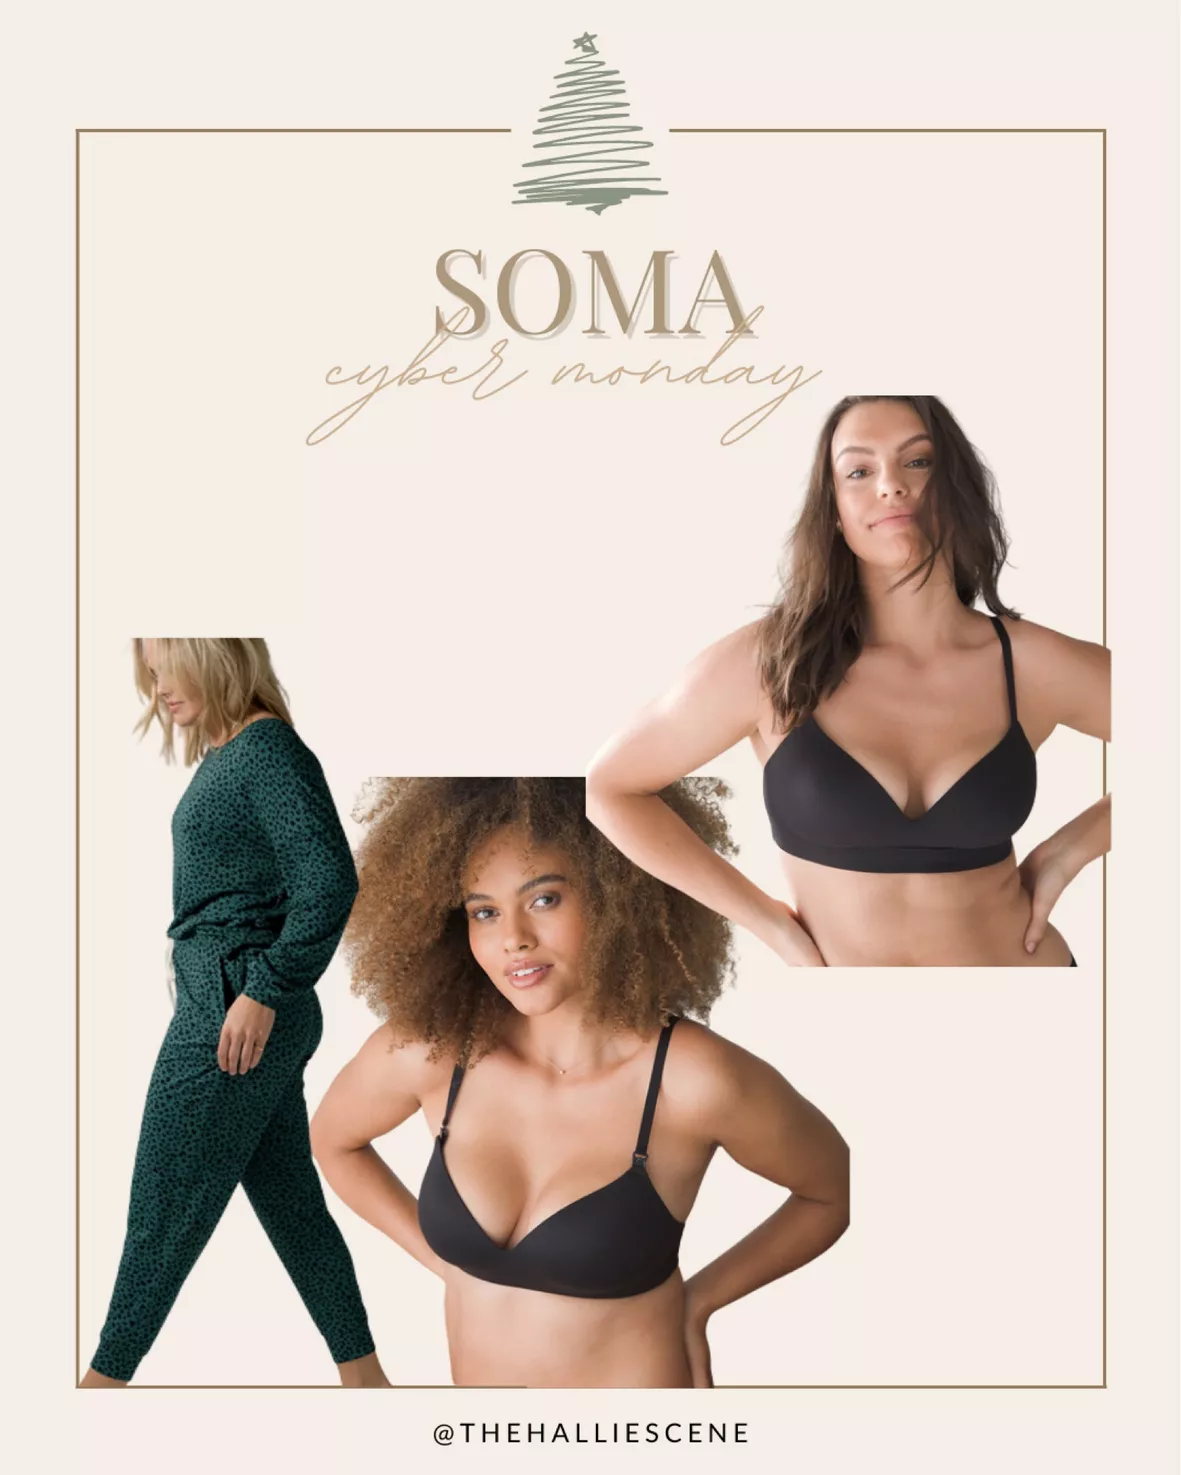 Soma nursing bra